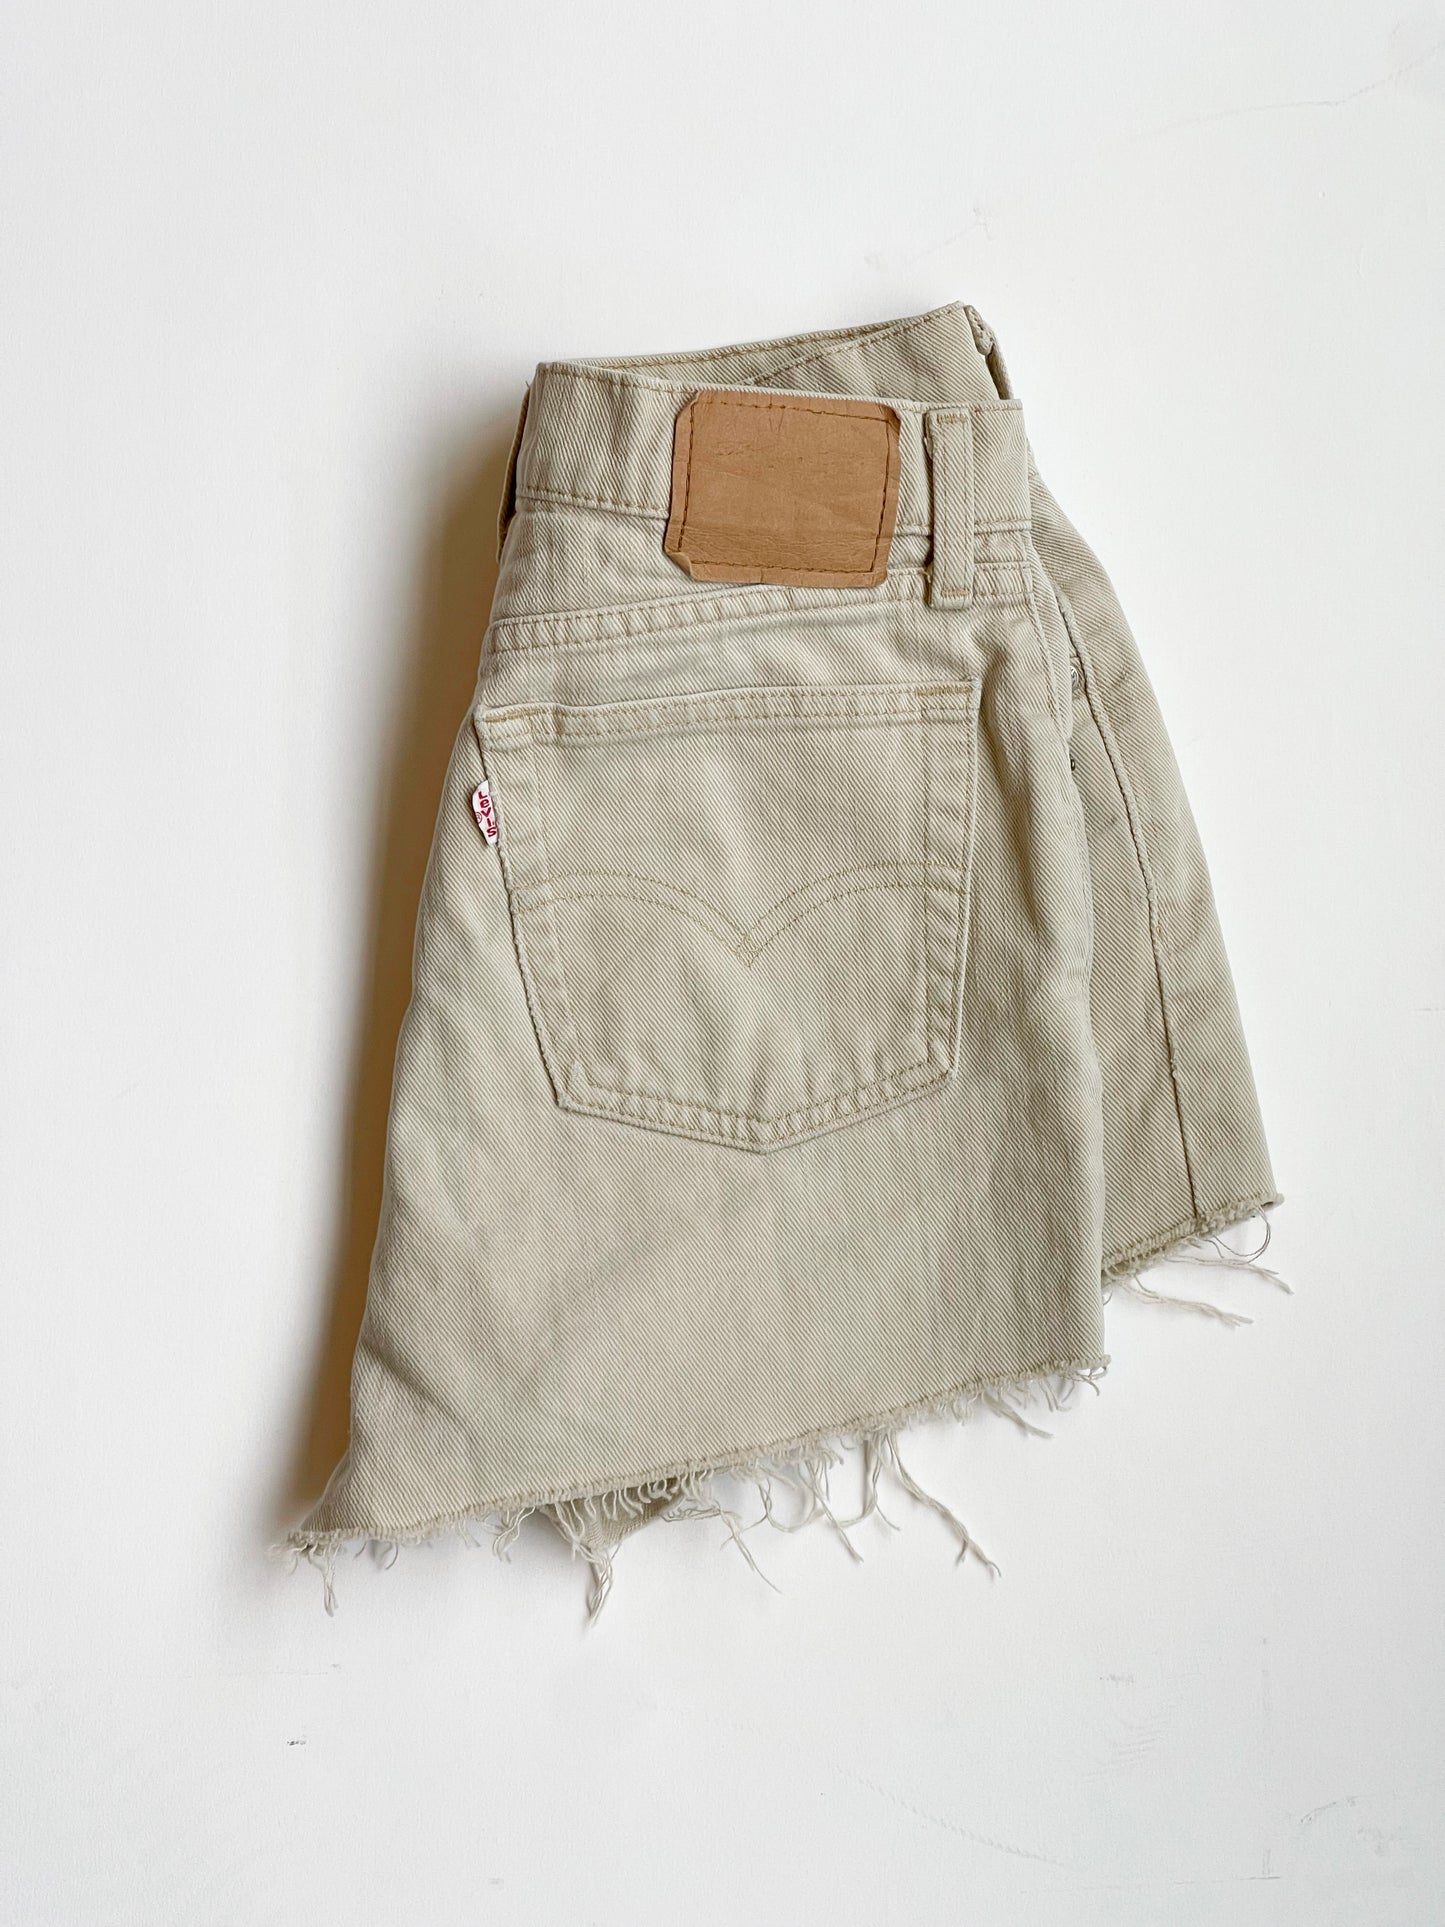 Vintage High-rise Levi's cutoff shorts - 26” W